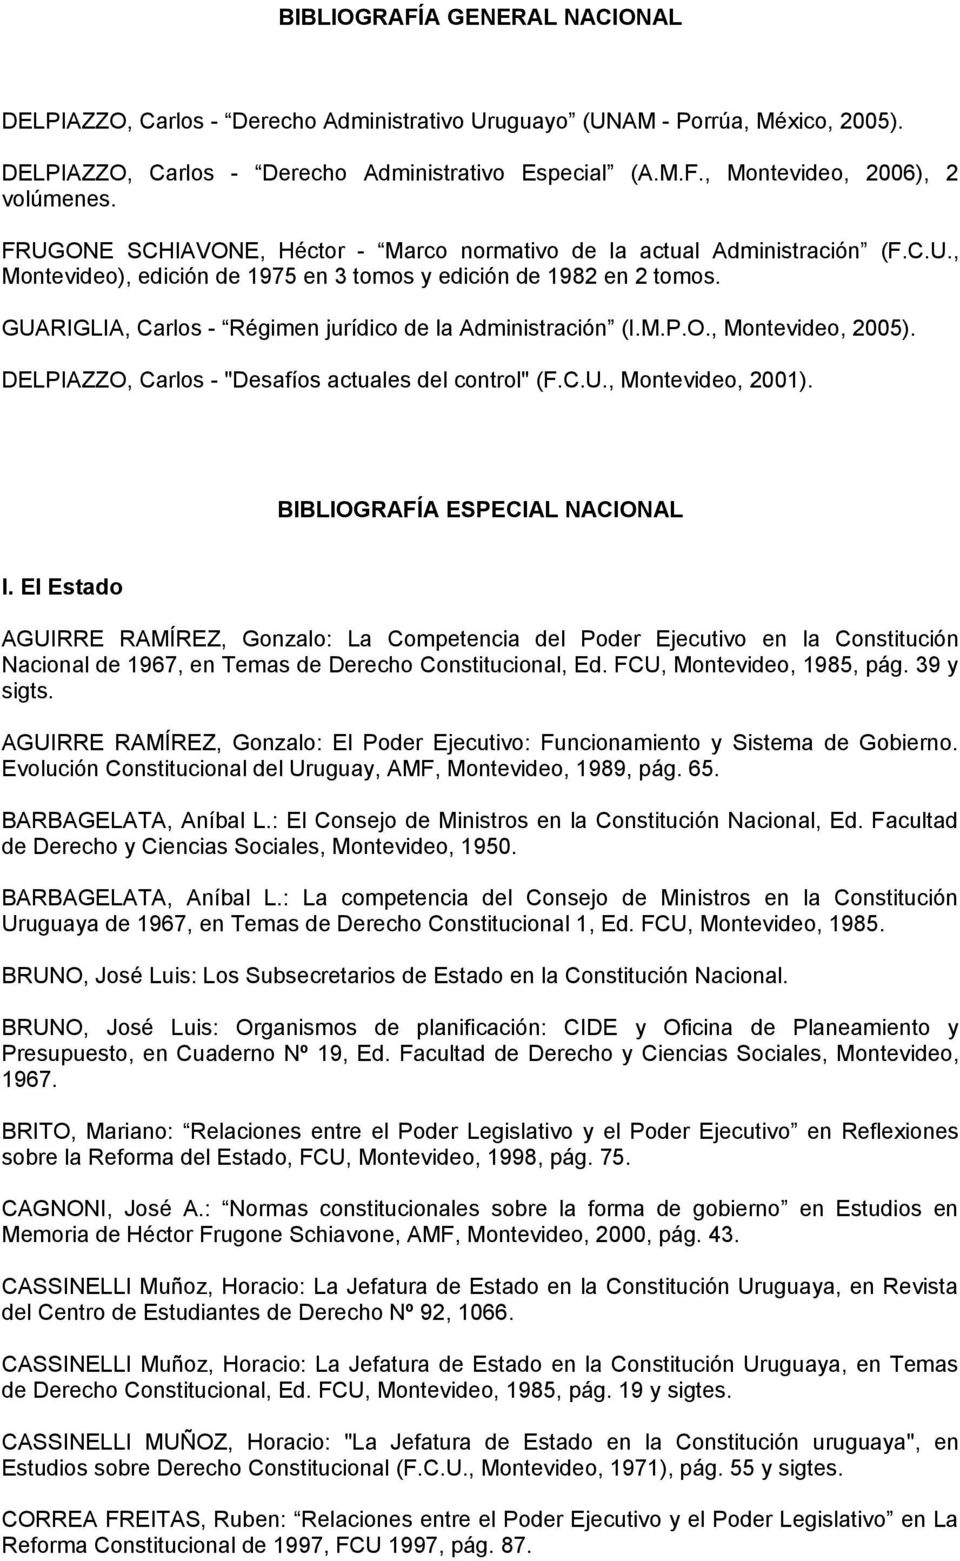 GUARIGLIA, Carlos - Régimen jurídico de la Administración (I.M.P.O., Montevideo, 2005). DELPIAZZO, Carlos - "Desafíos actuales del control" (F.C.U., Montevideo, 2001).